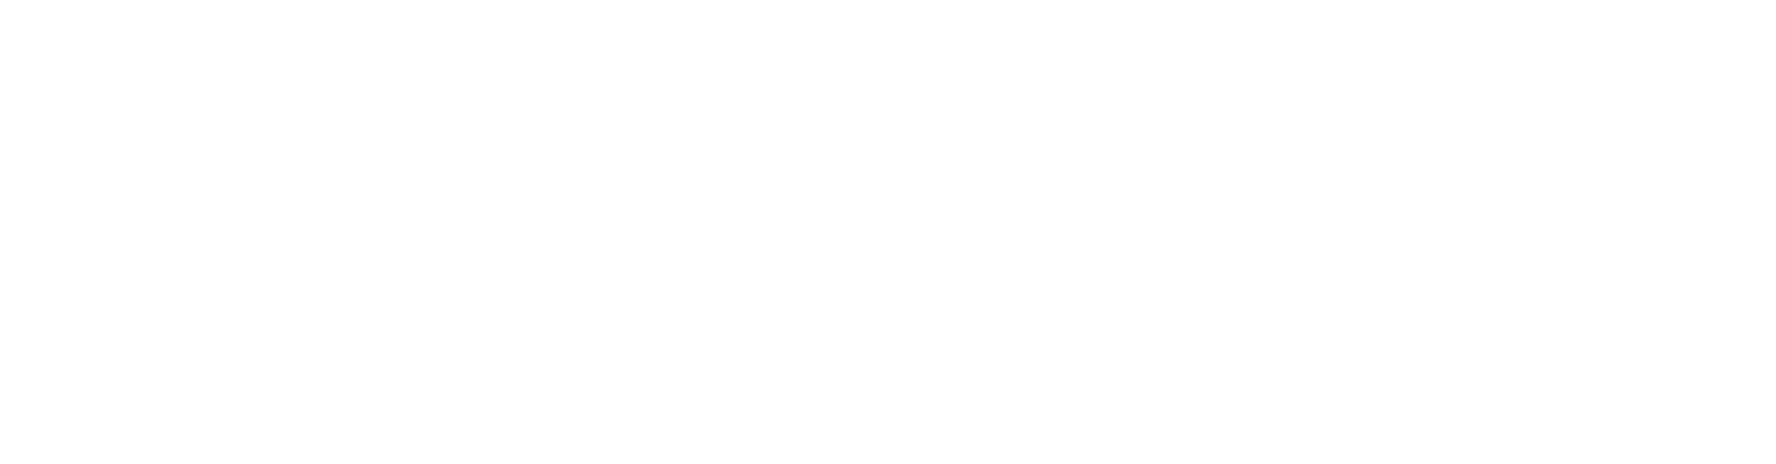 A-Sapiens Business School Corso Auditor per la Parità di Genere